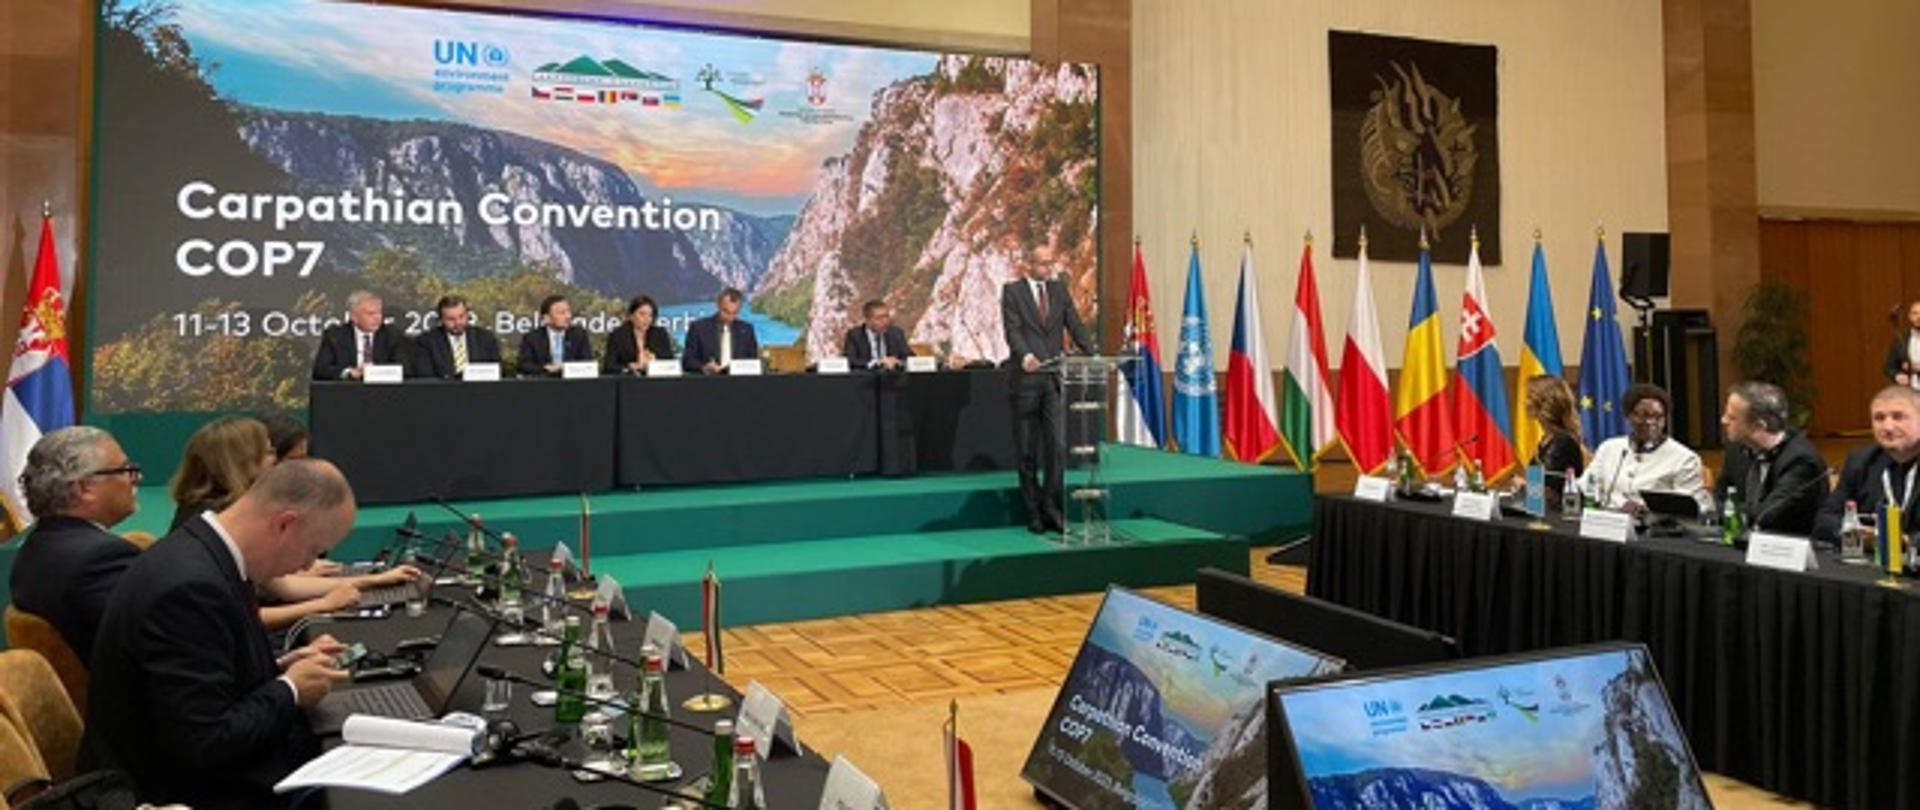 W trakcie 7. posiedzenia Konferencji Stron Konwencji o ochronie i zrównoważonym rozwoju Karpat (COP7), które odbyło się 13.10 w Belgradzie nastąpiło przekazanie przez Polskę Prezydencji Konwencji Karpackiej na rzecz Serbii.
